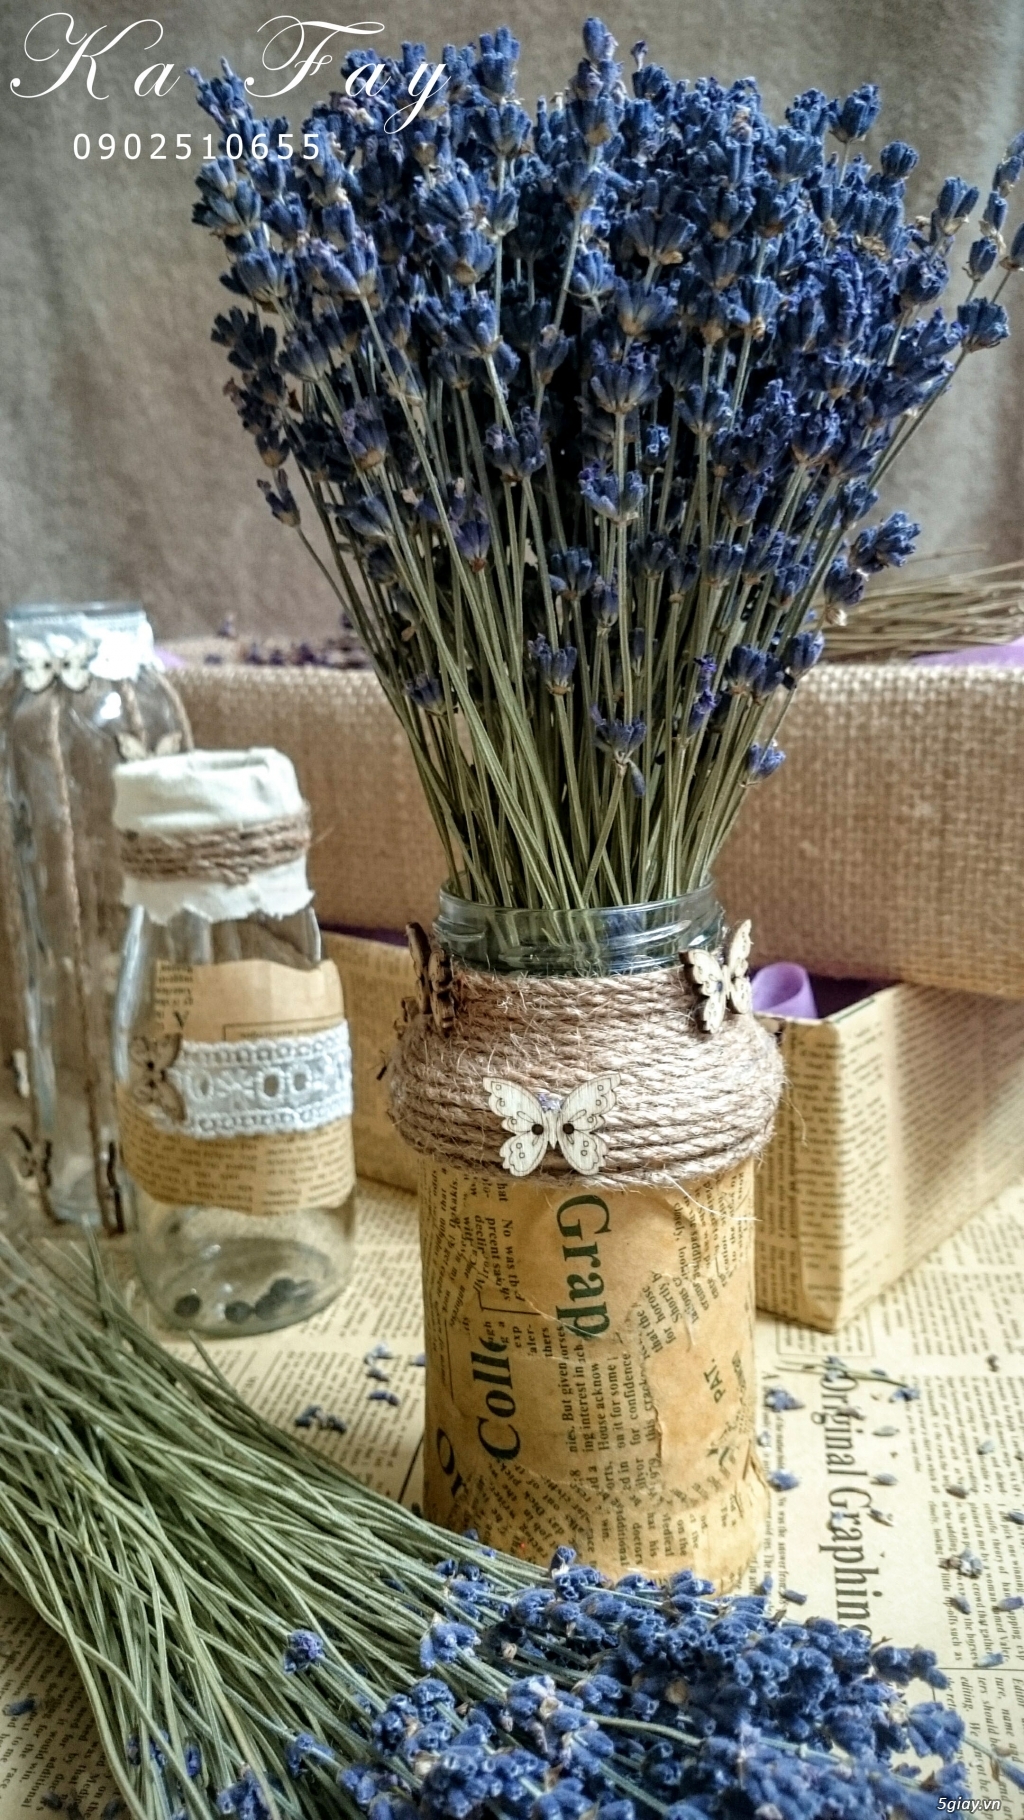 Hoa khô Lavender nhập khẩu từ pháp vs phụ kiện handmade - 10